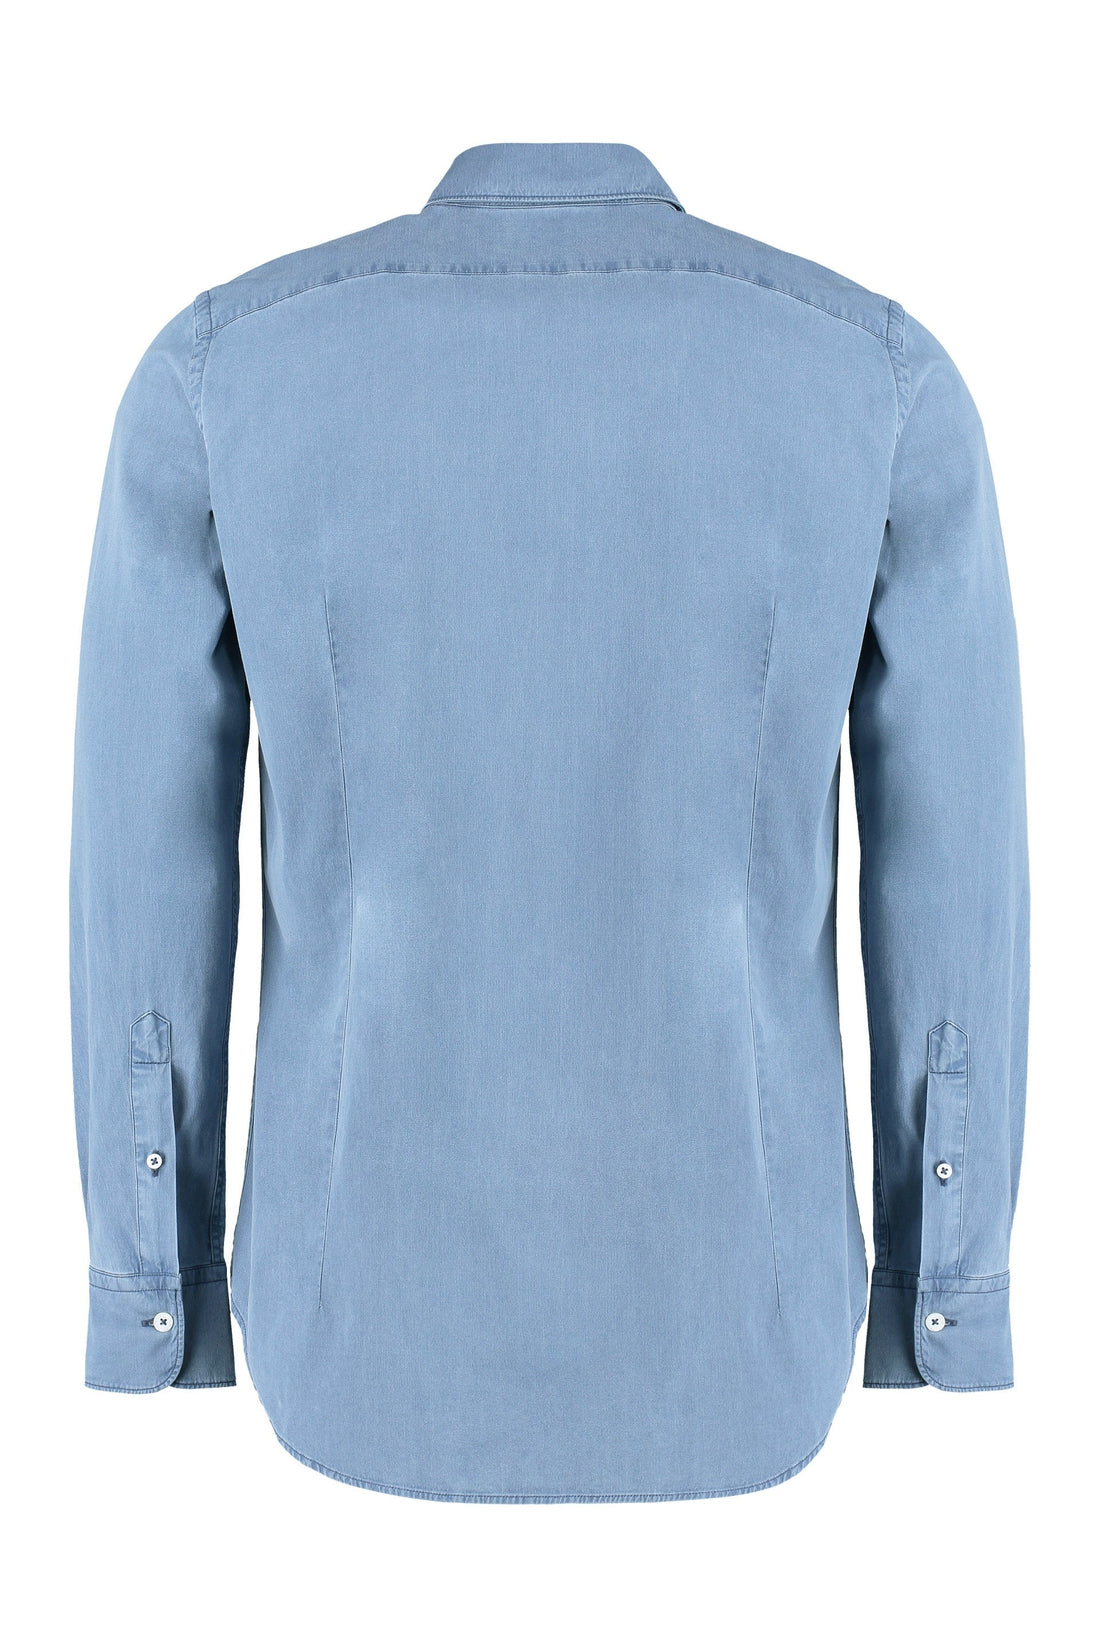 Canali-OUTLET-SALE-Stretch cotton shirt-ARCHIVIST